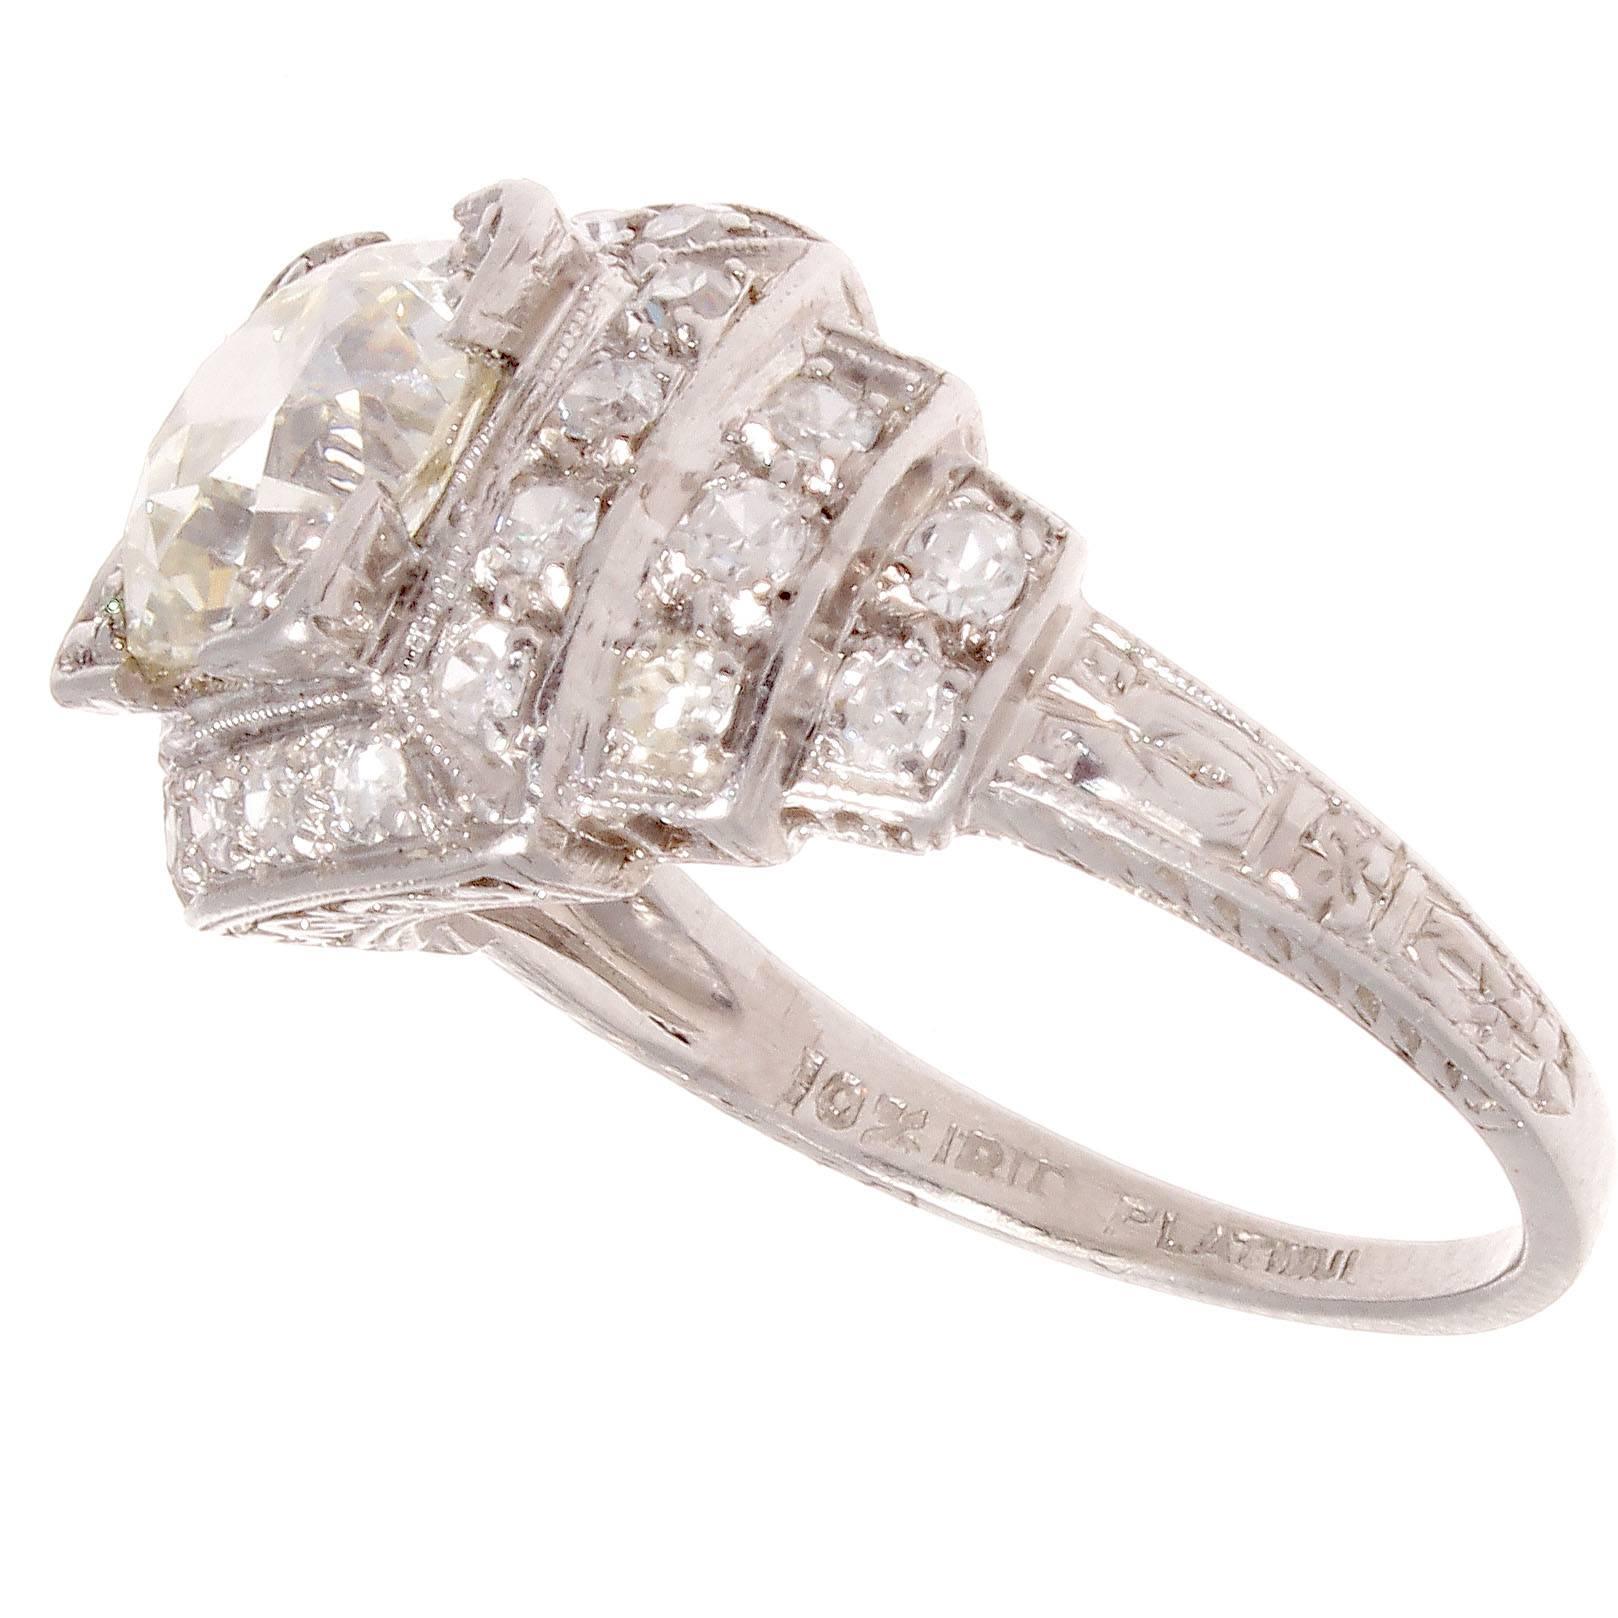 Old European Cut Art Deco 1.92 Carat Diamond Platinum Engagement Ring